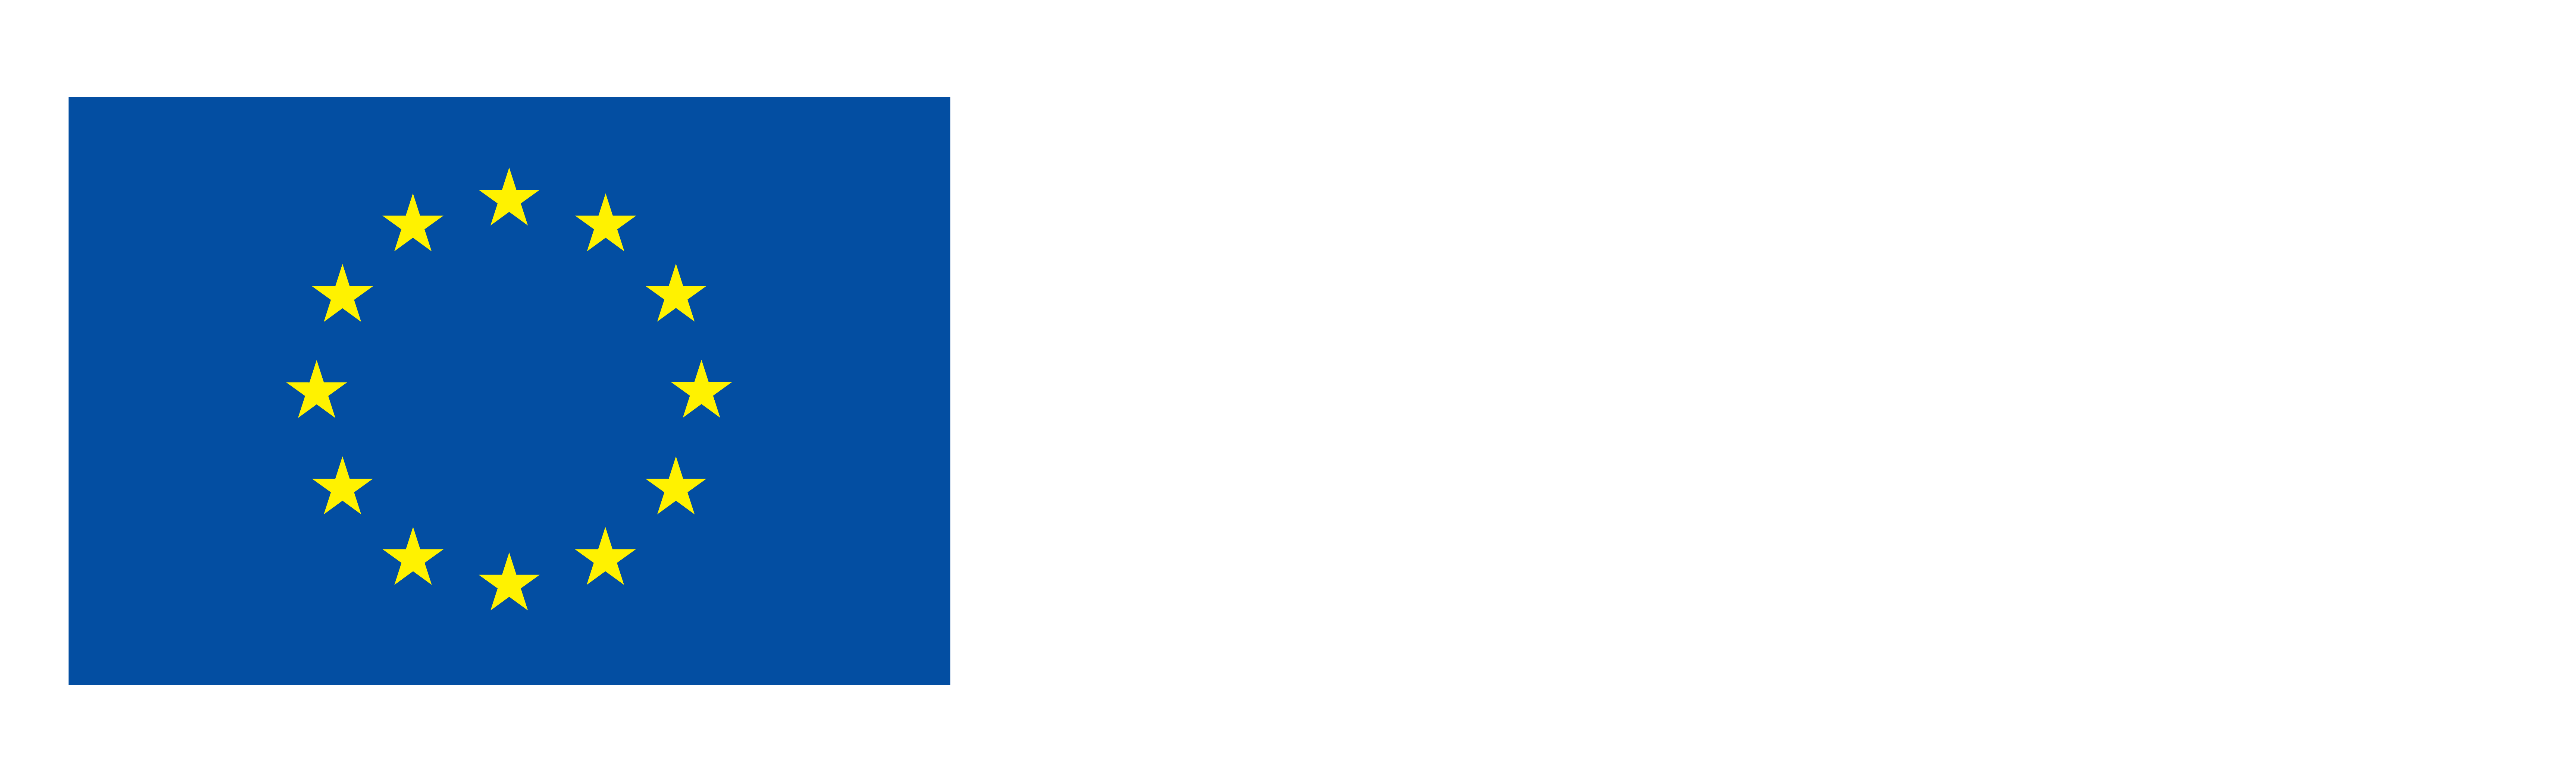 Logo financiación unión europea